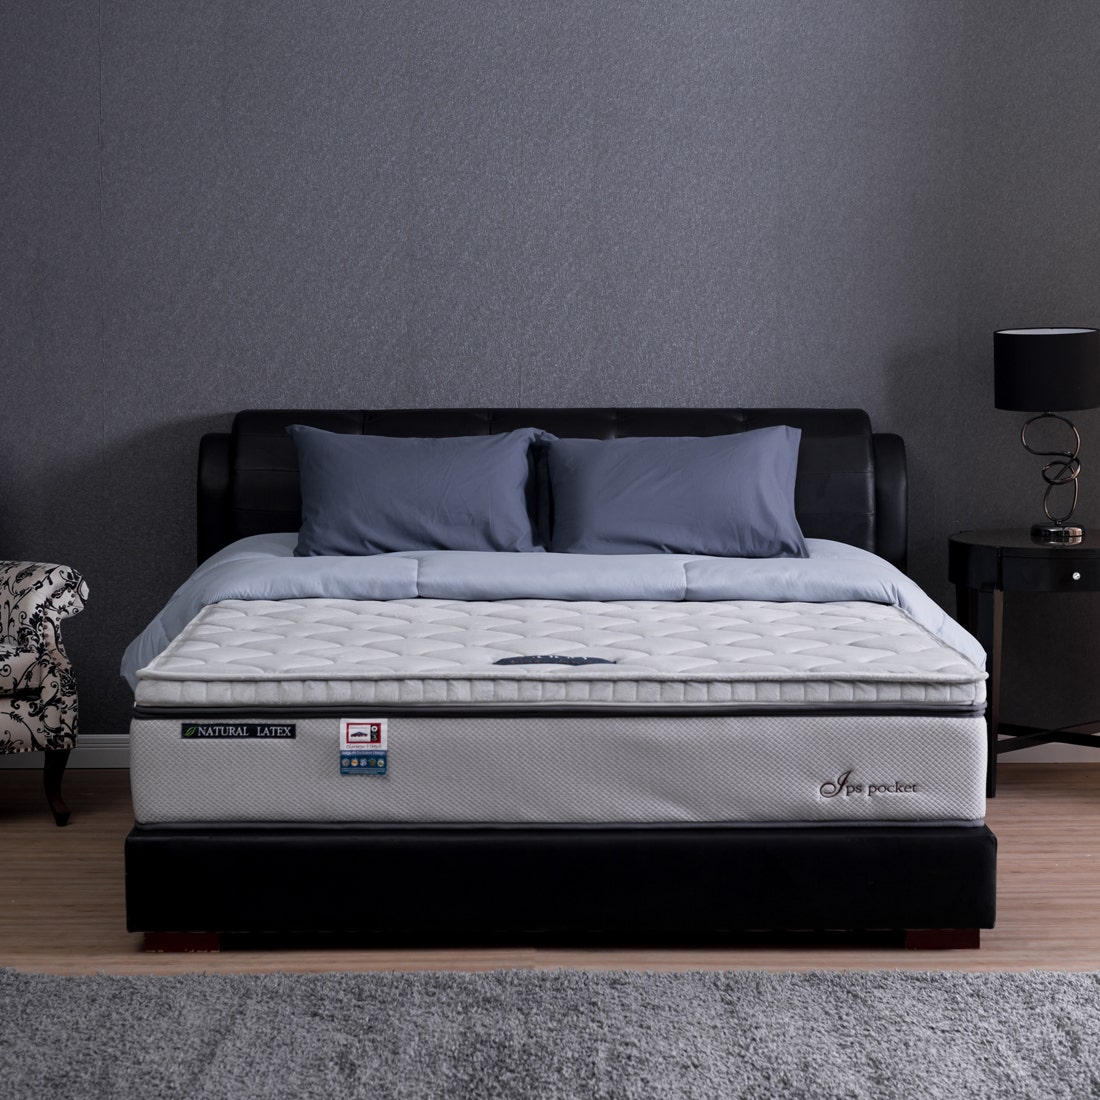 39001260-mattress-bedding-mattresses-pocket-spring-mattress-31